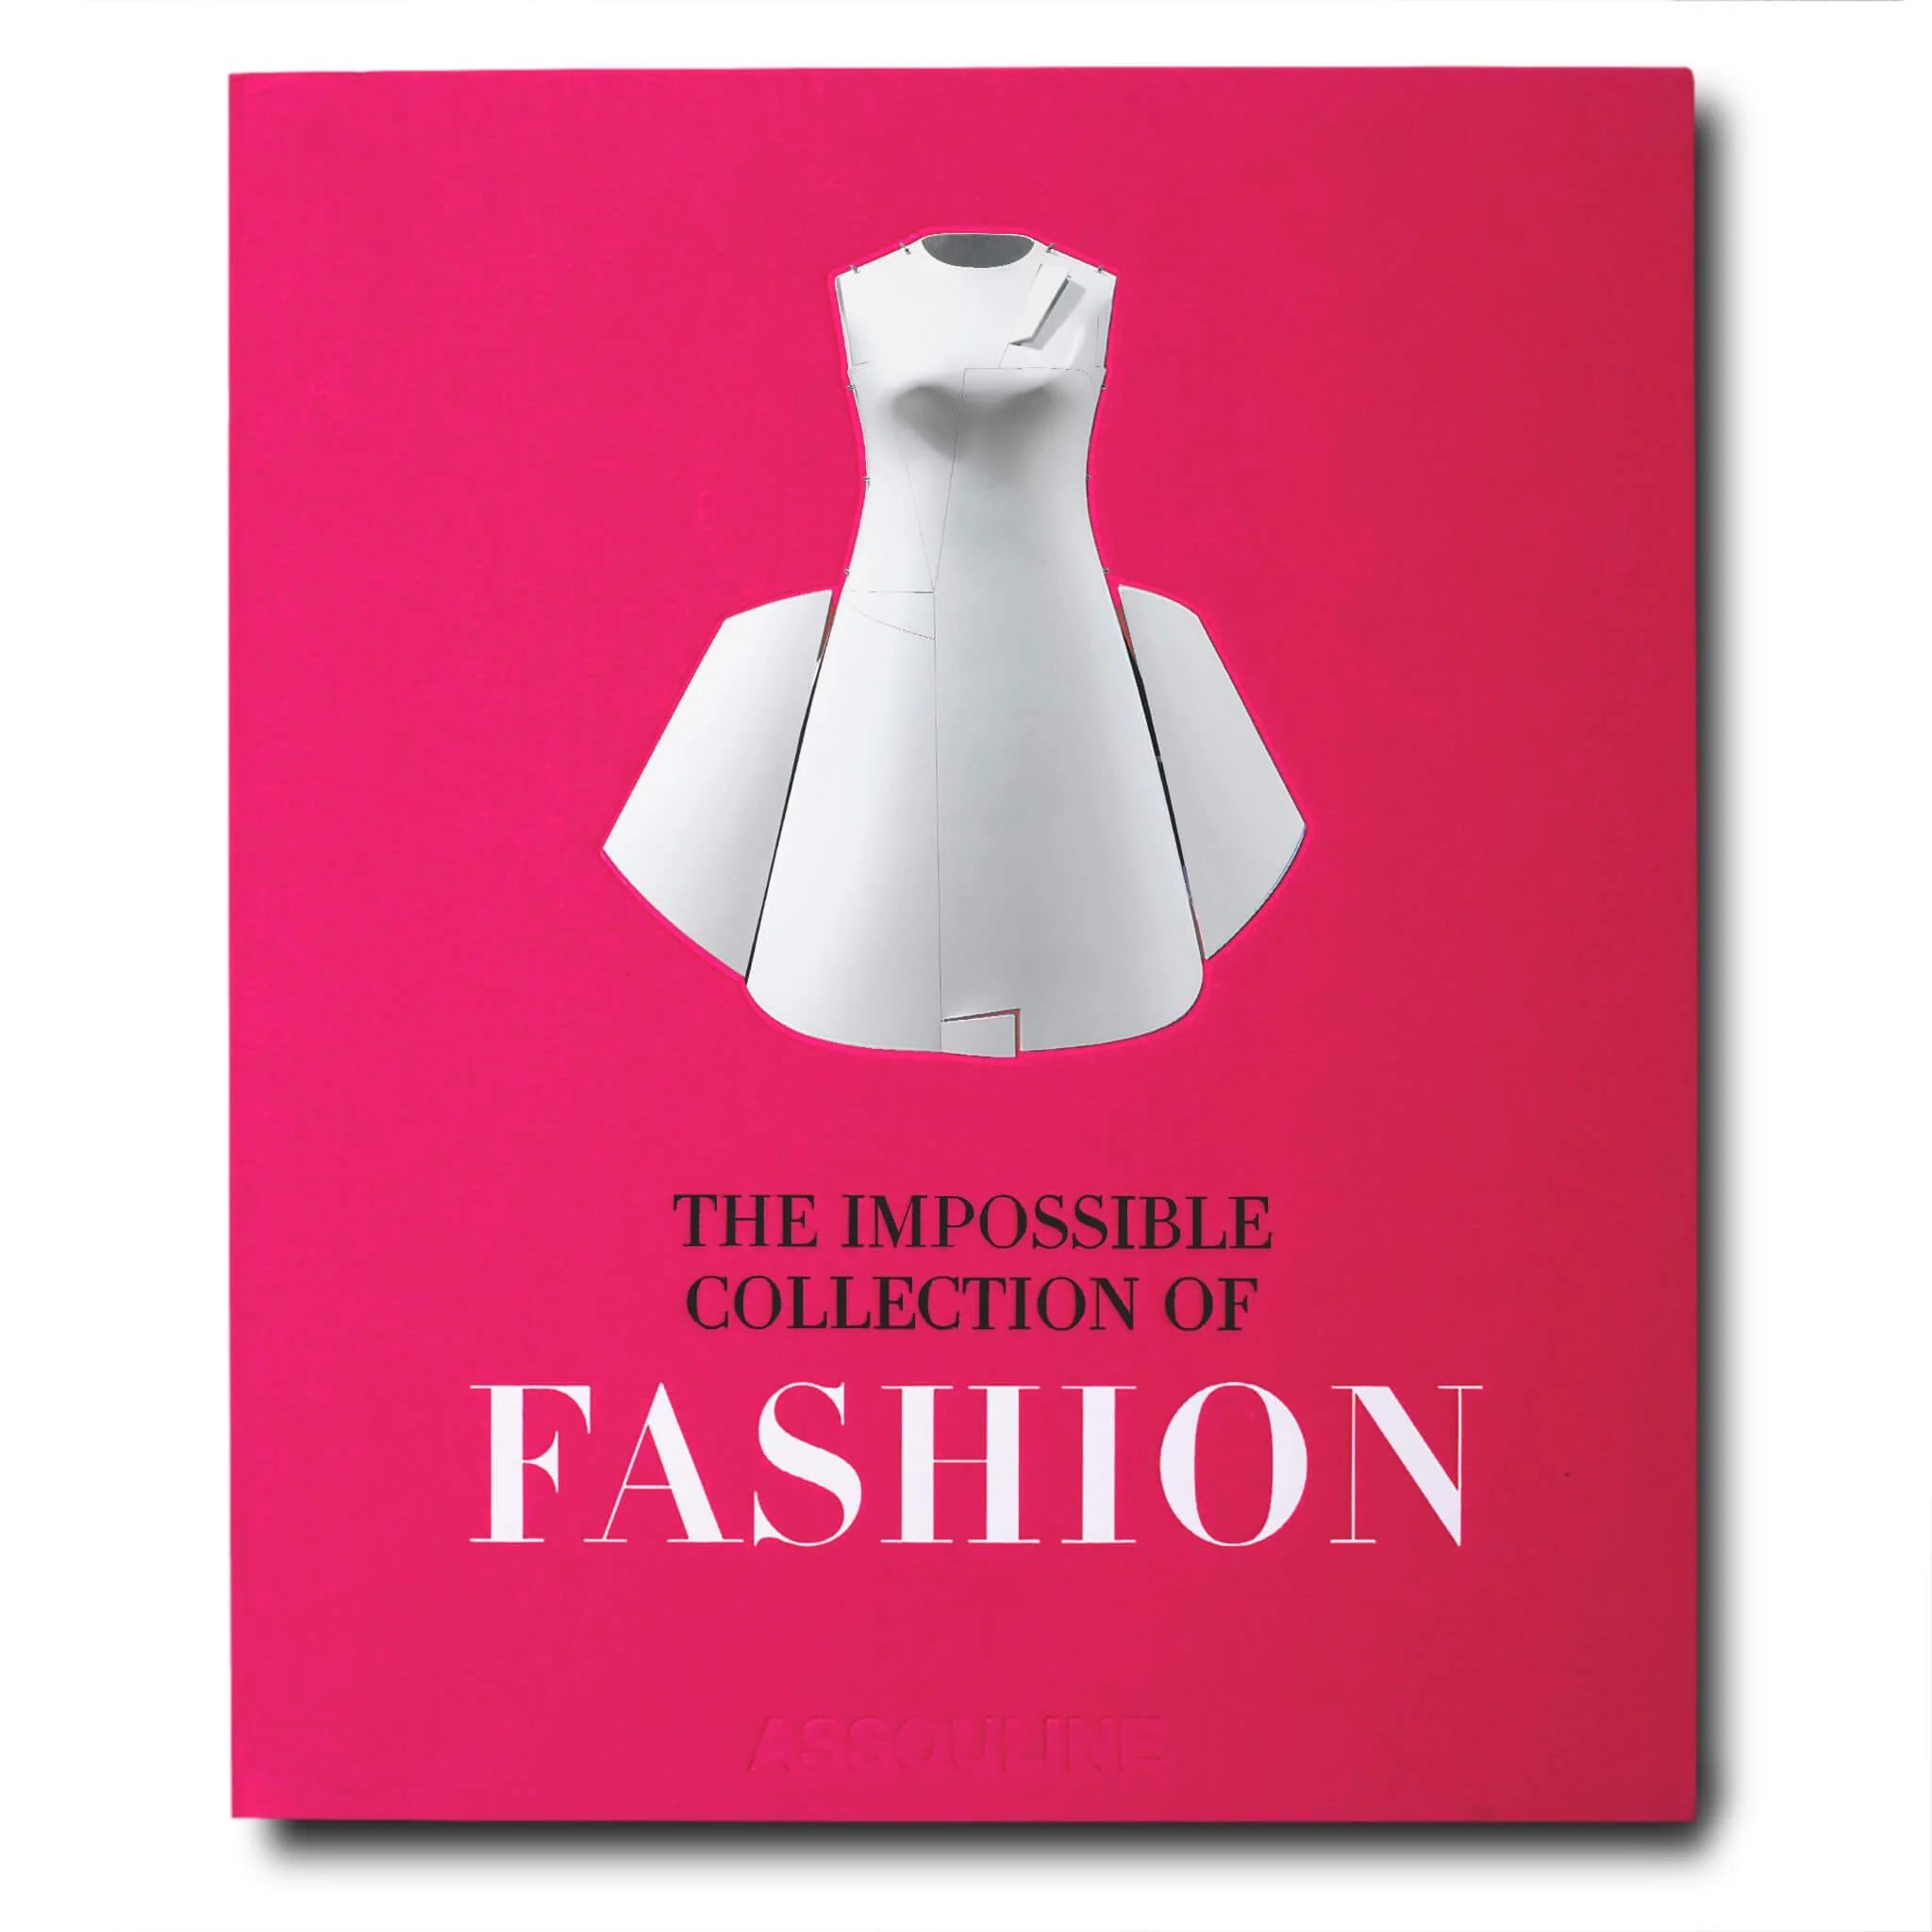 THE IMPOSSIBLE COLLECTION OF FASHION, coffee table book sobre moda de la marca Assouline